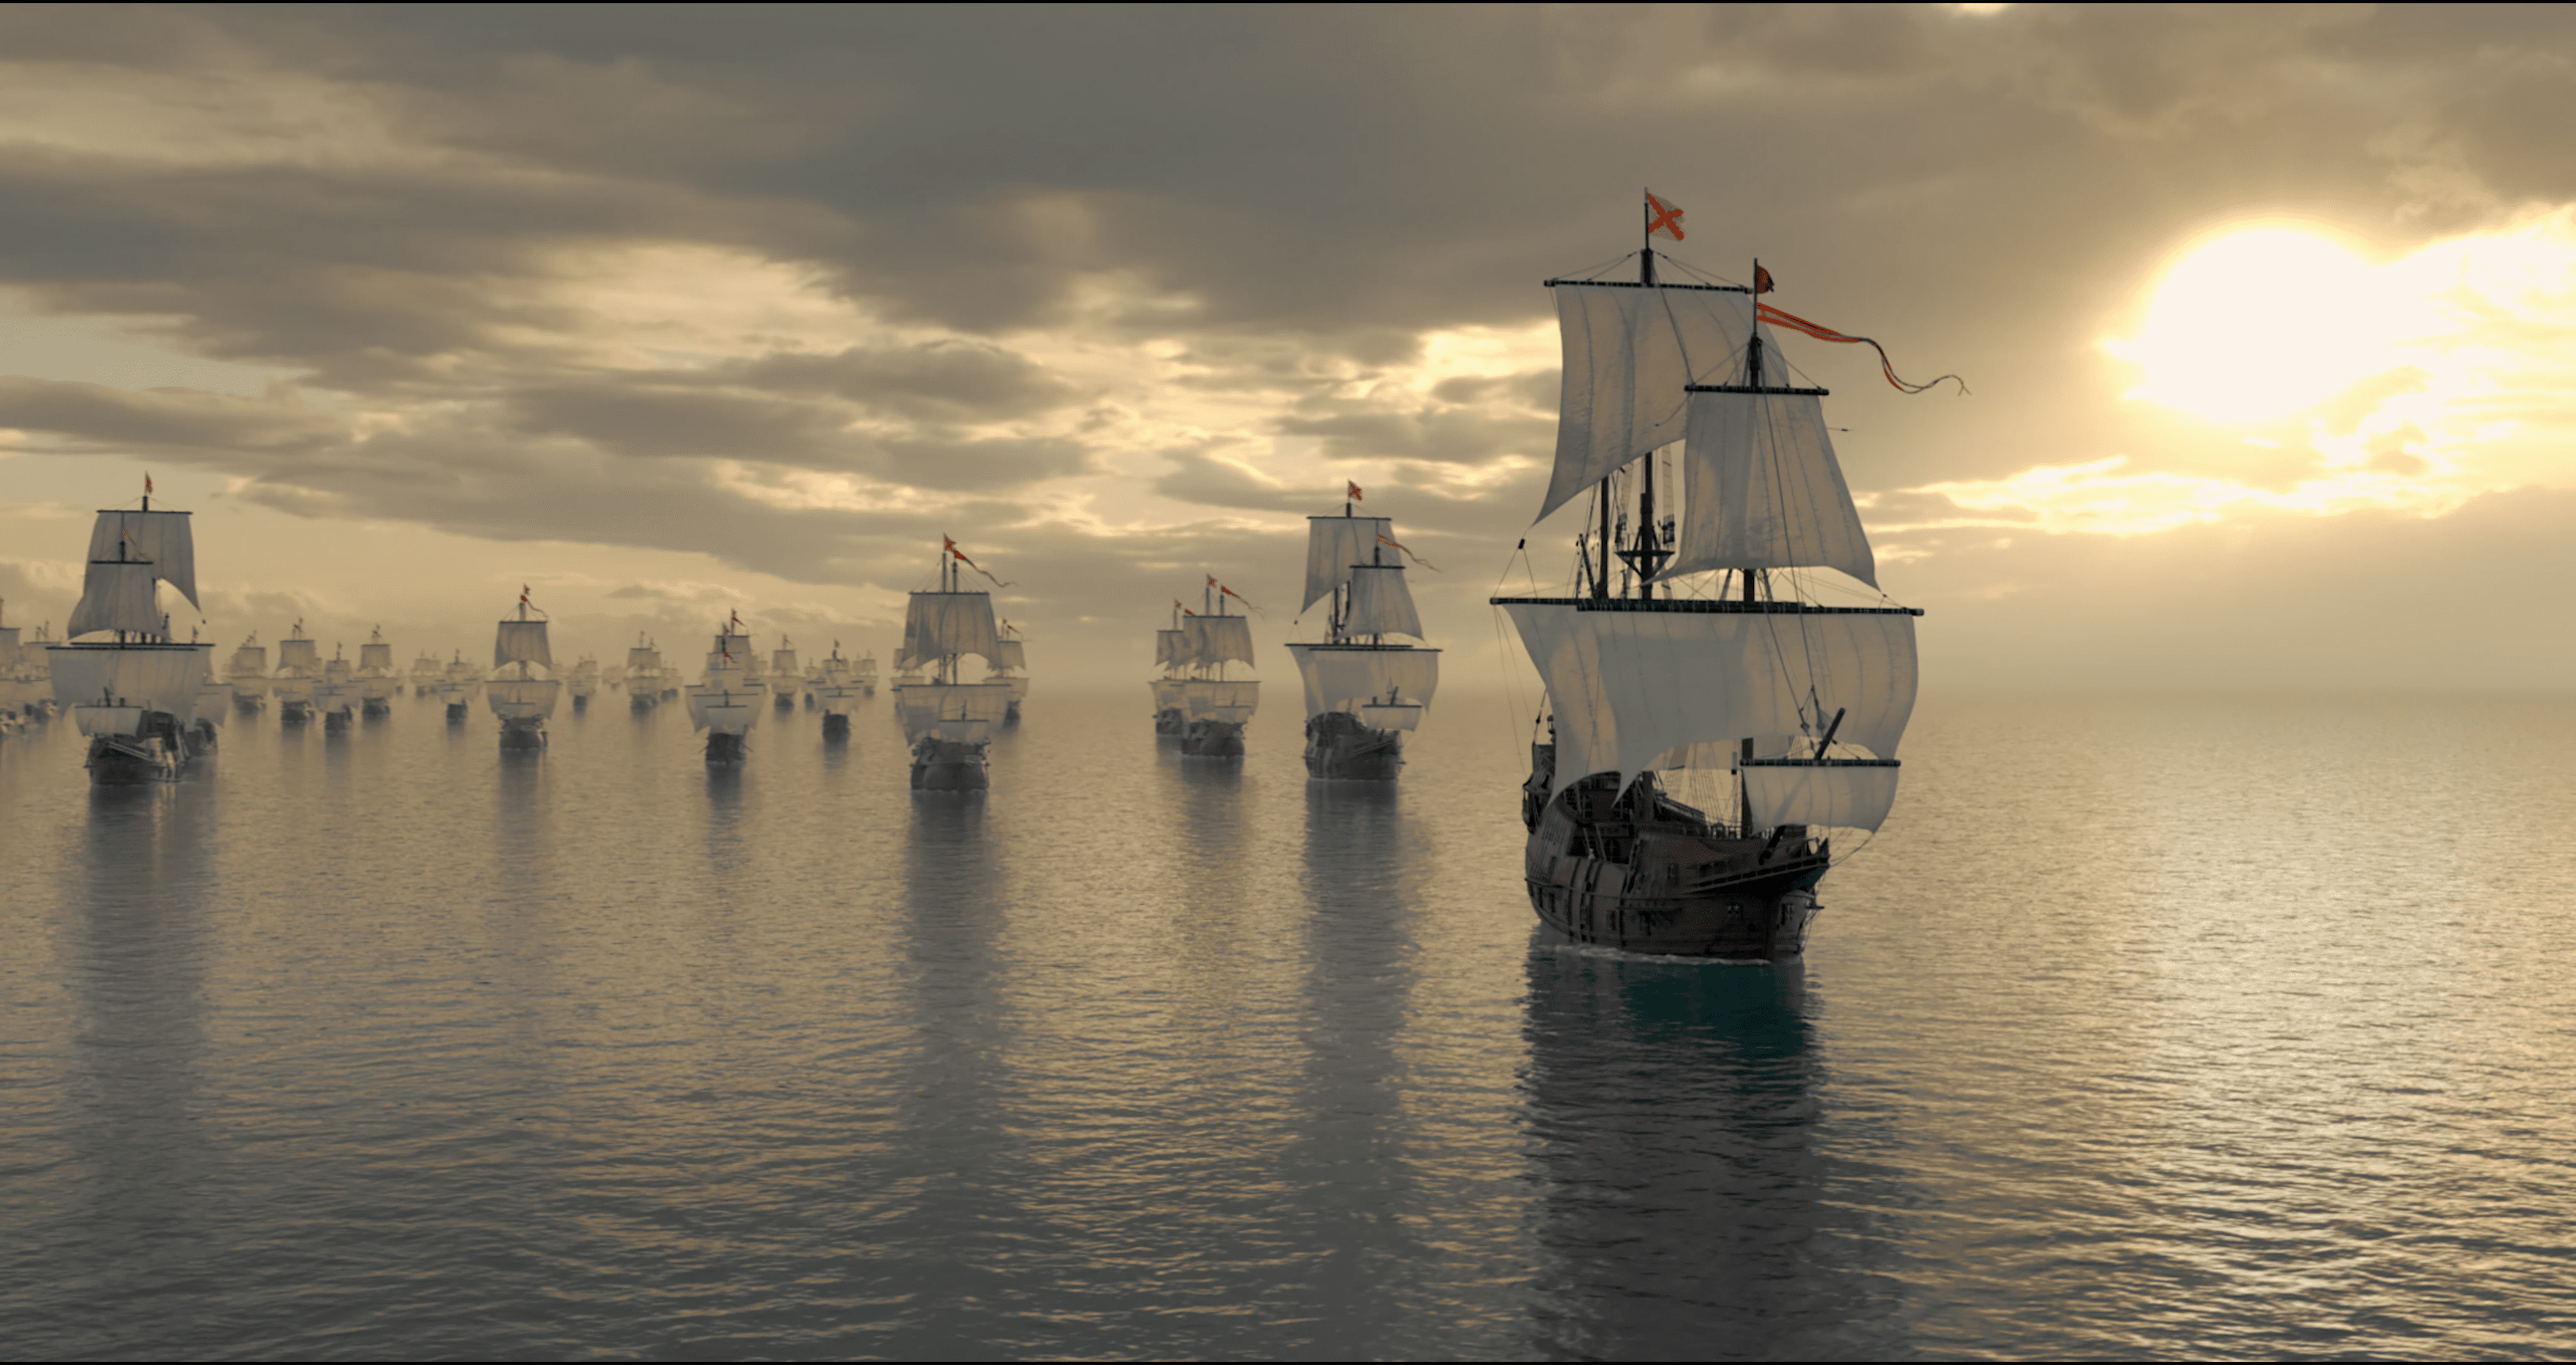 La navegación en conserva y la «avería», las armas de la Flota de Indias contra la piratería